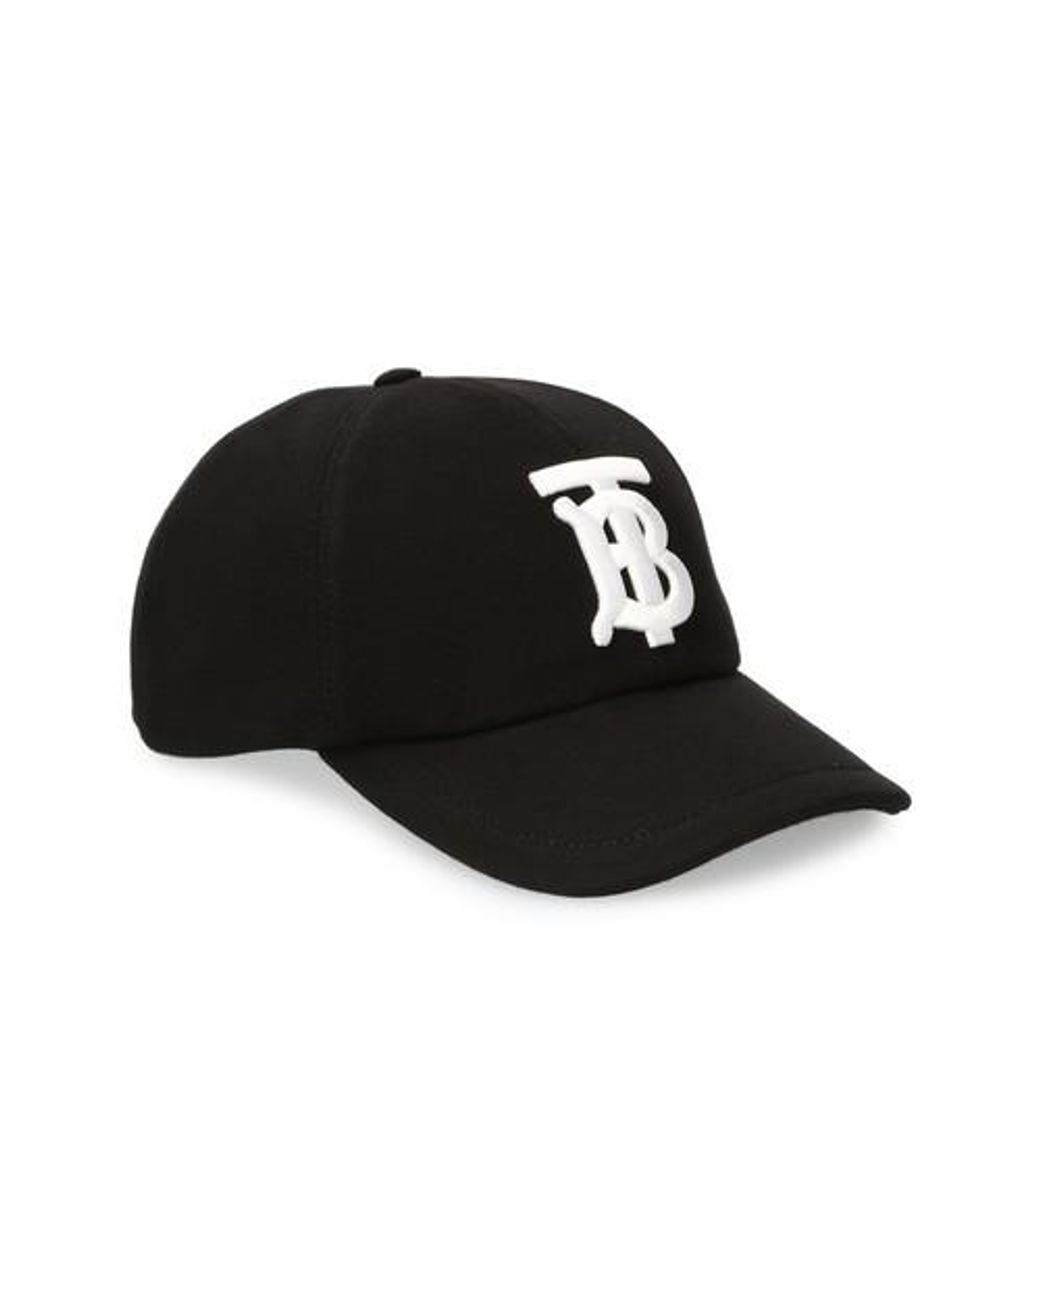 Burberry Tb Baseball Cap in Black for Men - Lyst